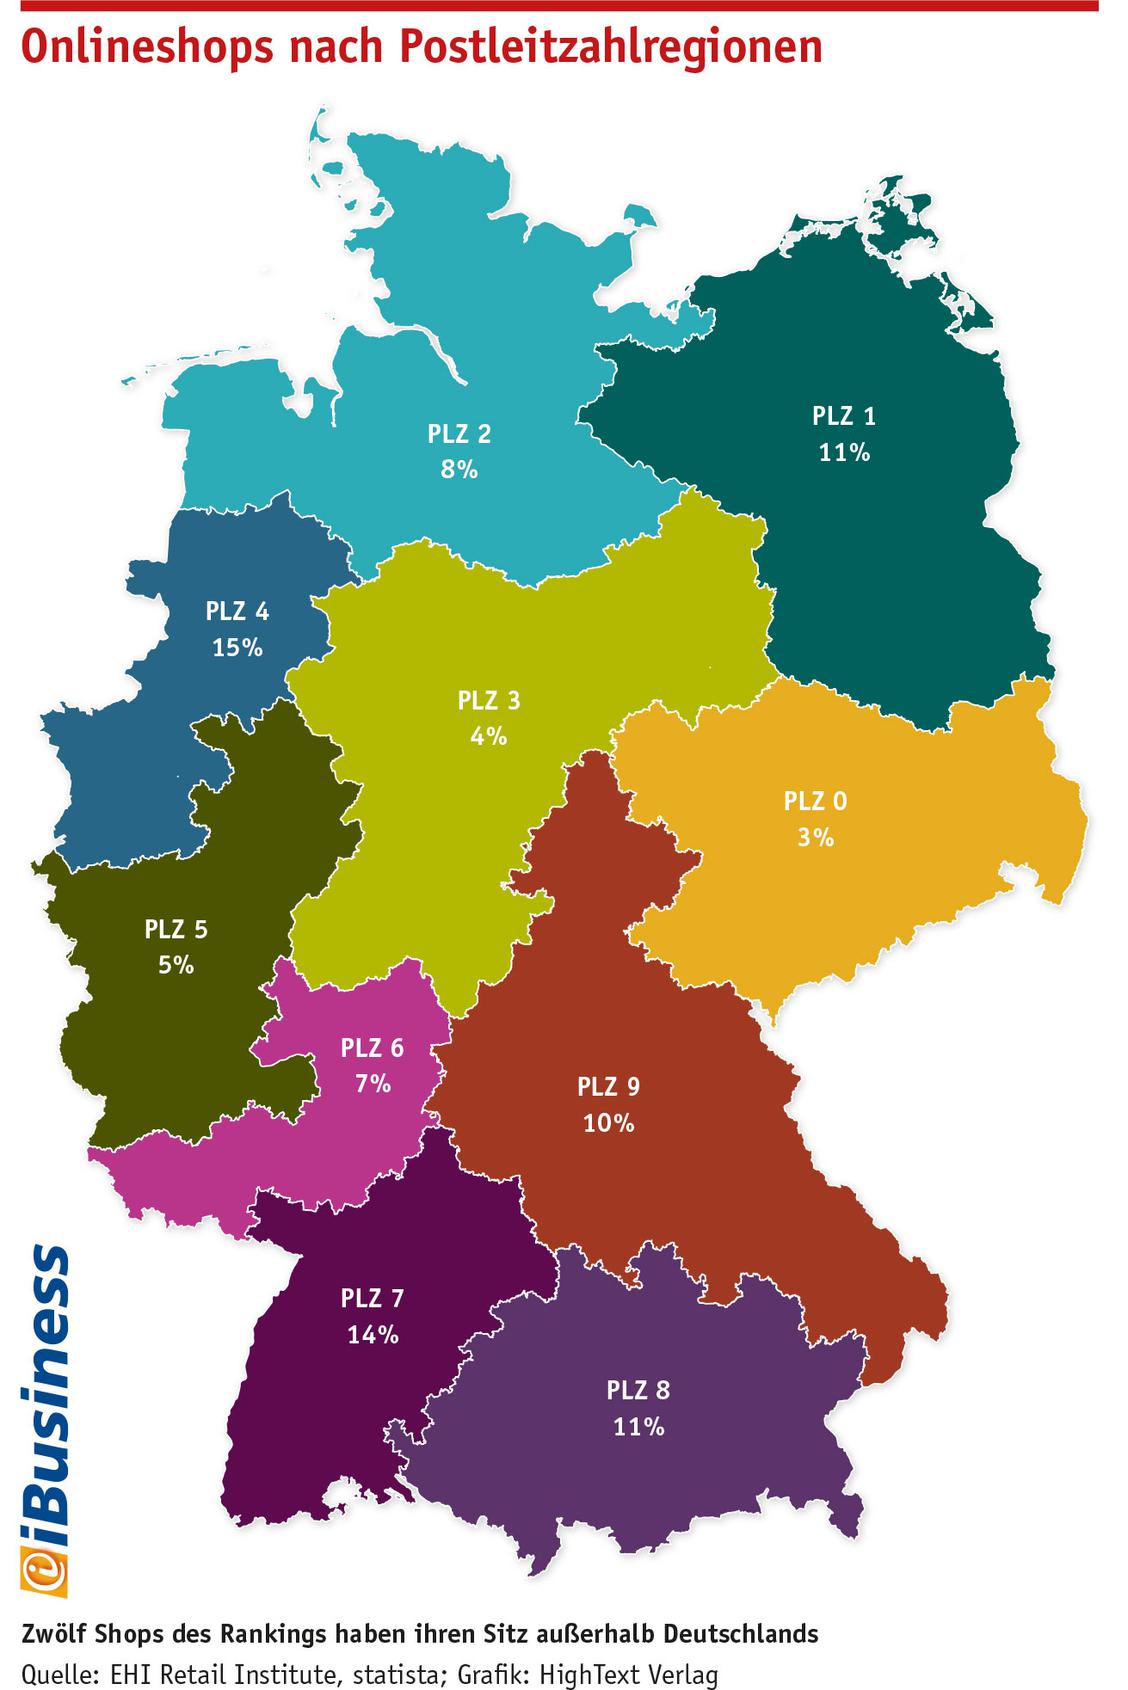 Onlineshops nach Postleitzahlregionen Deutschland 2019 - Deutschlandkarte (Grafik: Quelle: EHI Retail Institute, statista; Grafik: HighText Verlag)